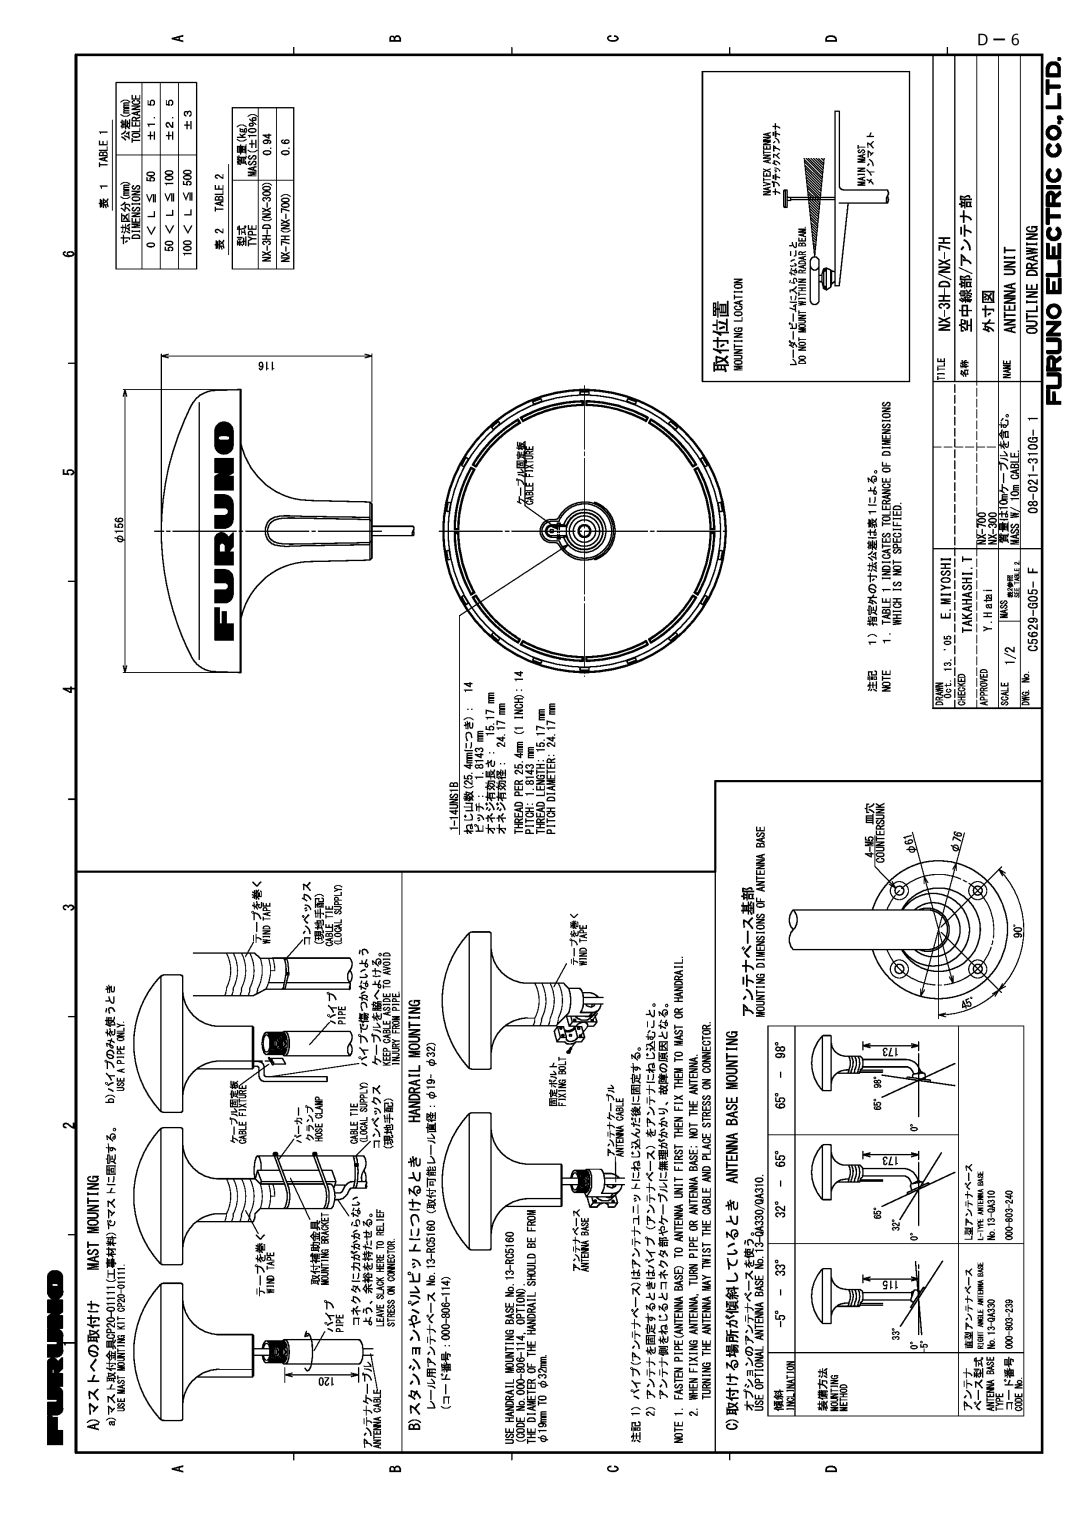 Furuno NX-700B manual 取付位置, Ｄ-ー６６ 